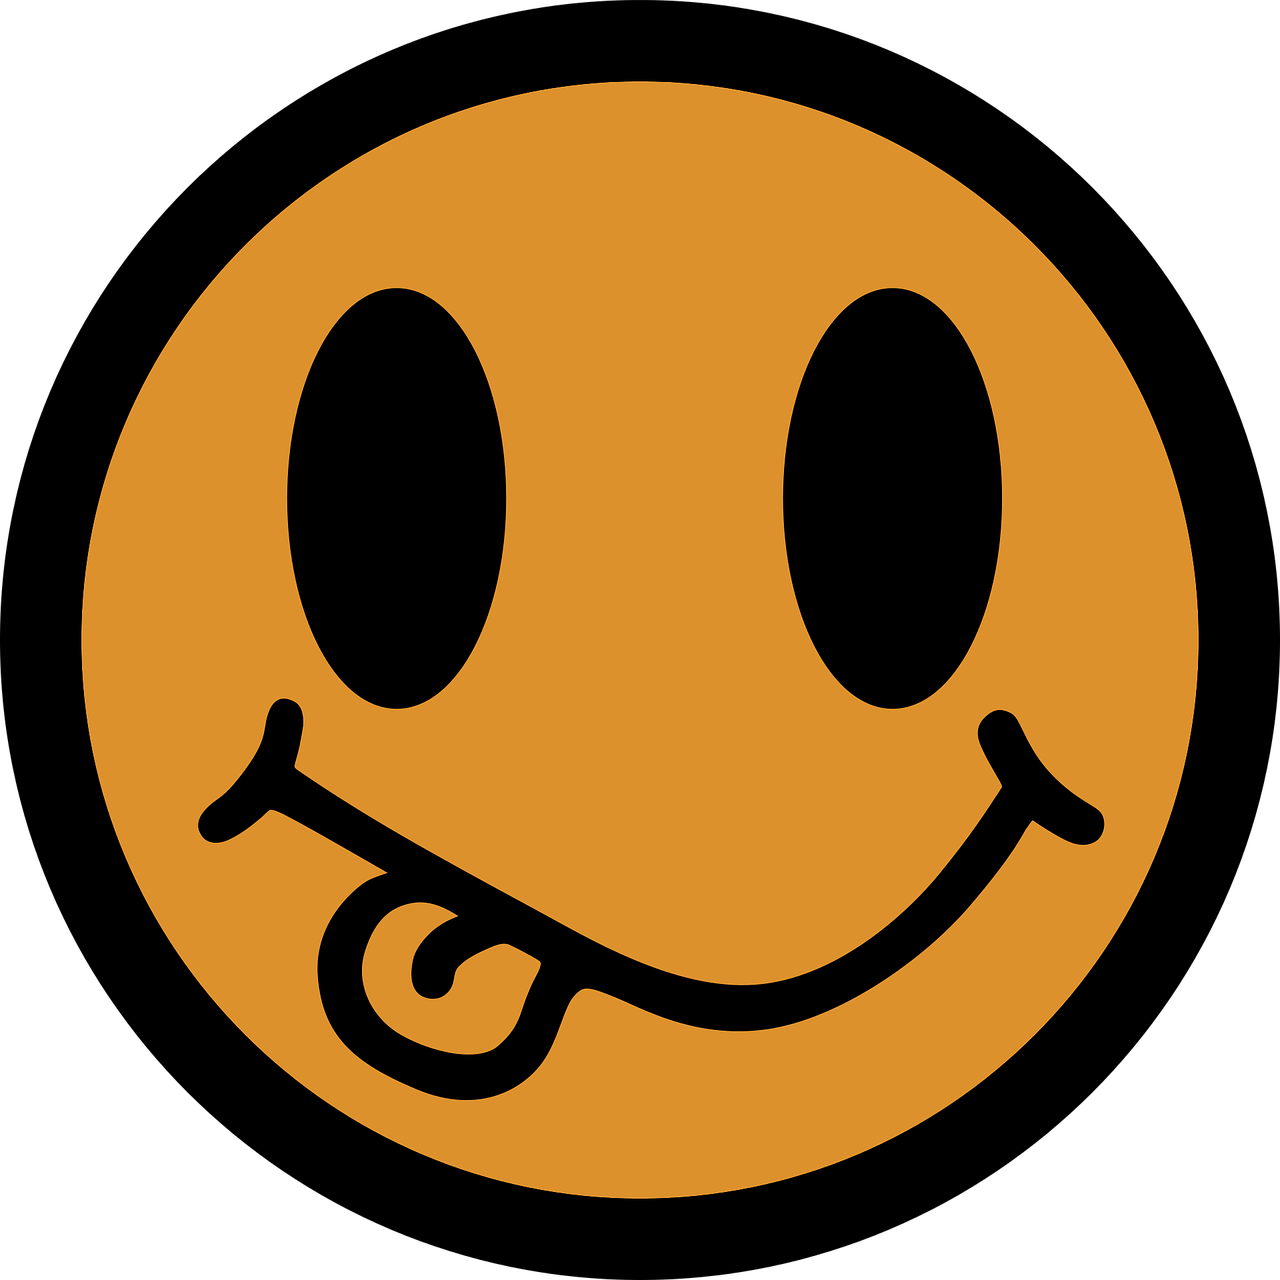 smiley icon the language free photo